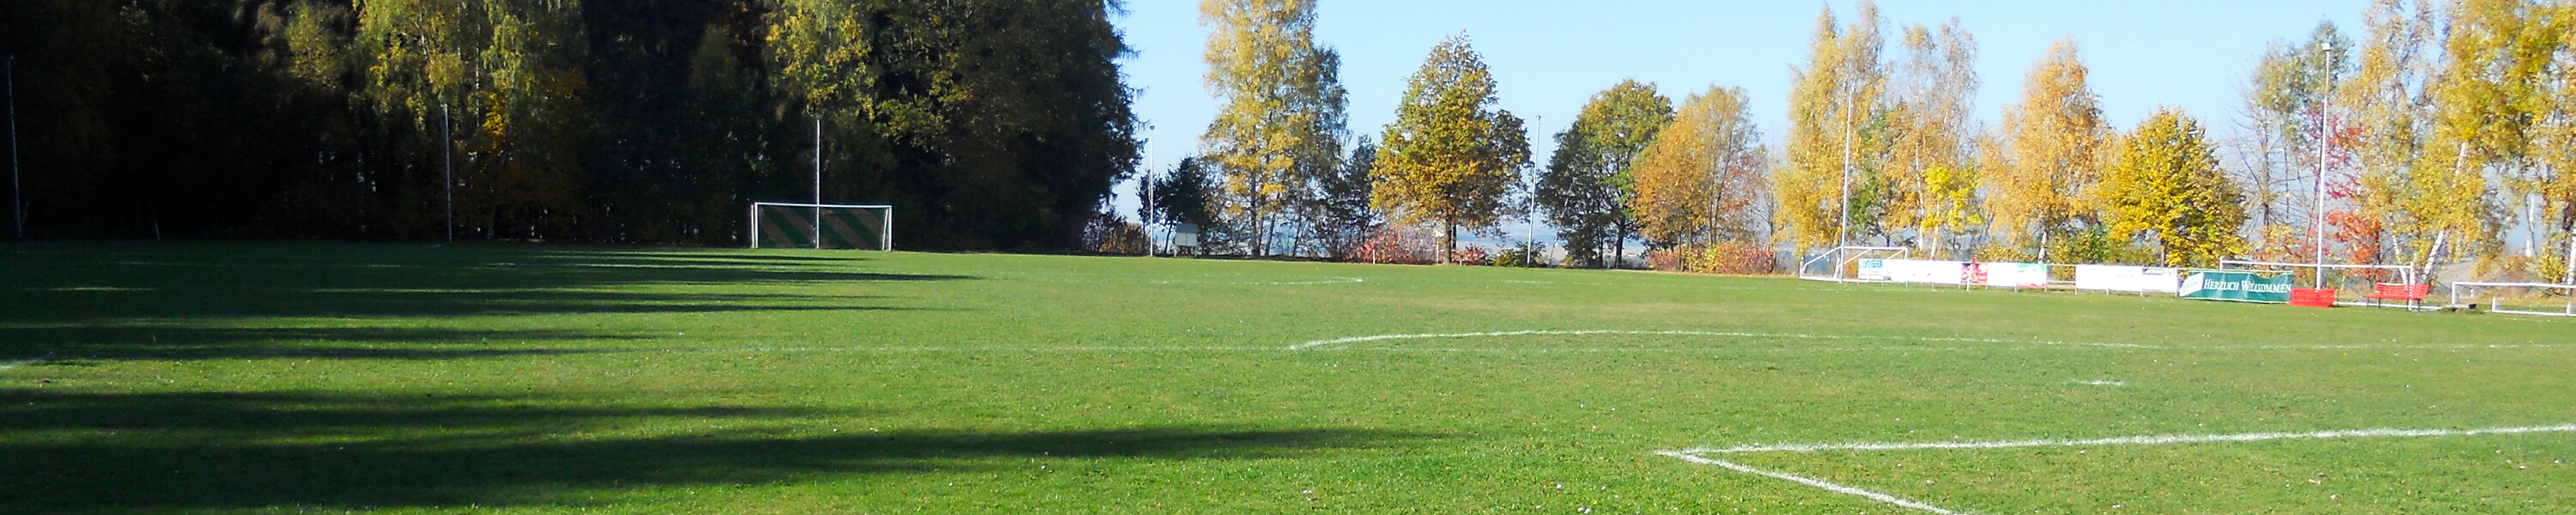 Rossauer Fußballplatz